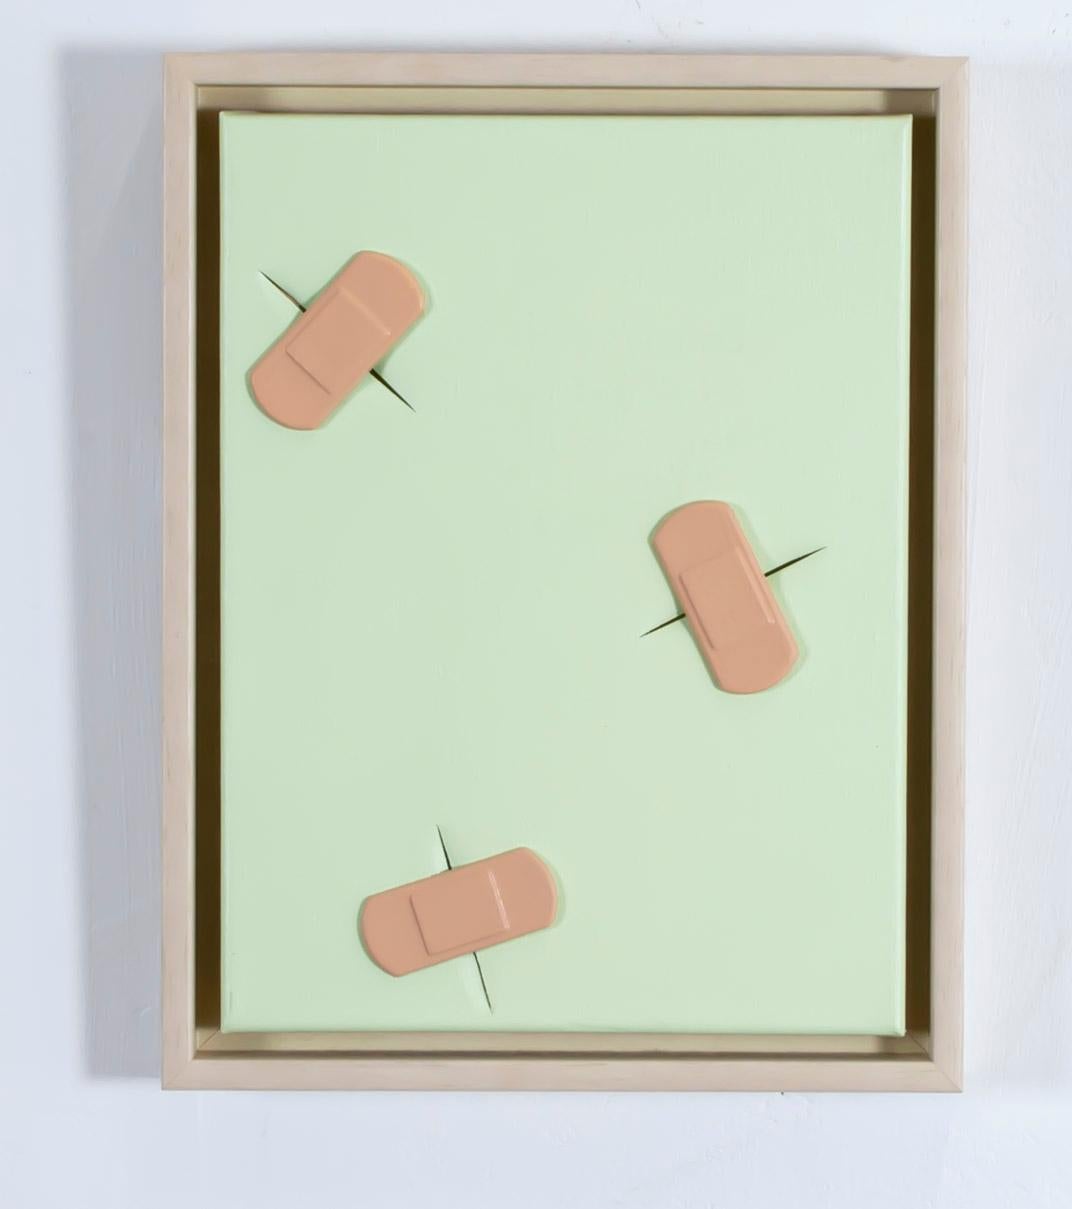 Boo-boos (von Lucio) Tealgrün geschnittene Leinwand mit gegossenen Kunststoffbändern bedeckt – Mixed Media Art von Dustin Cook